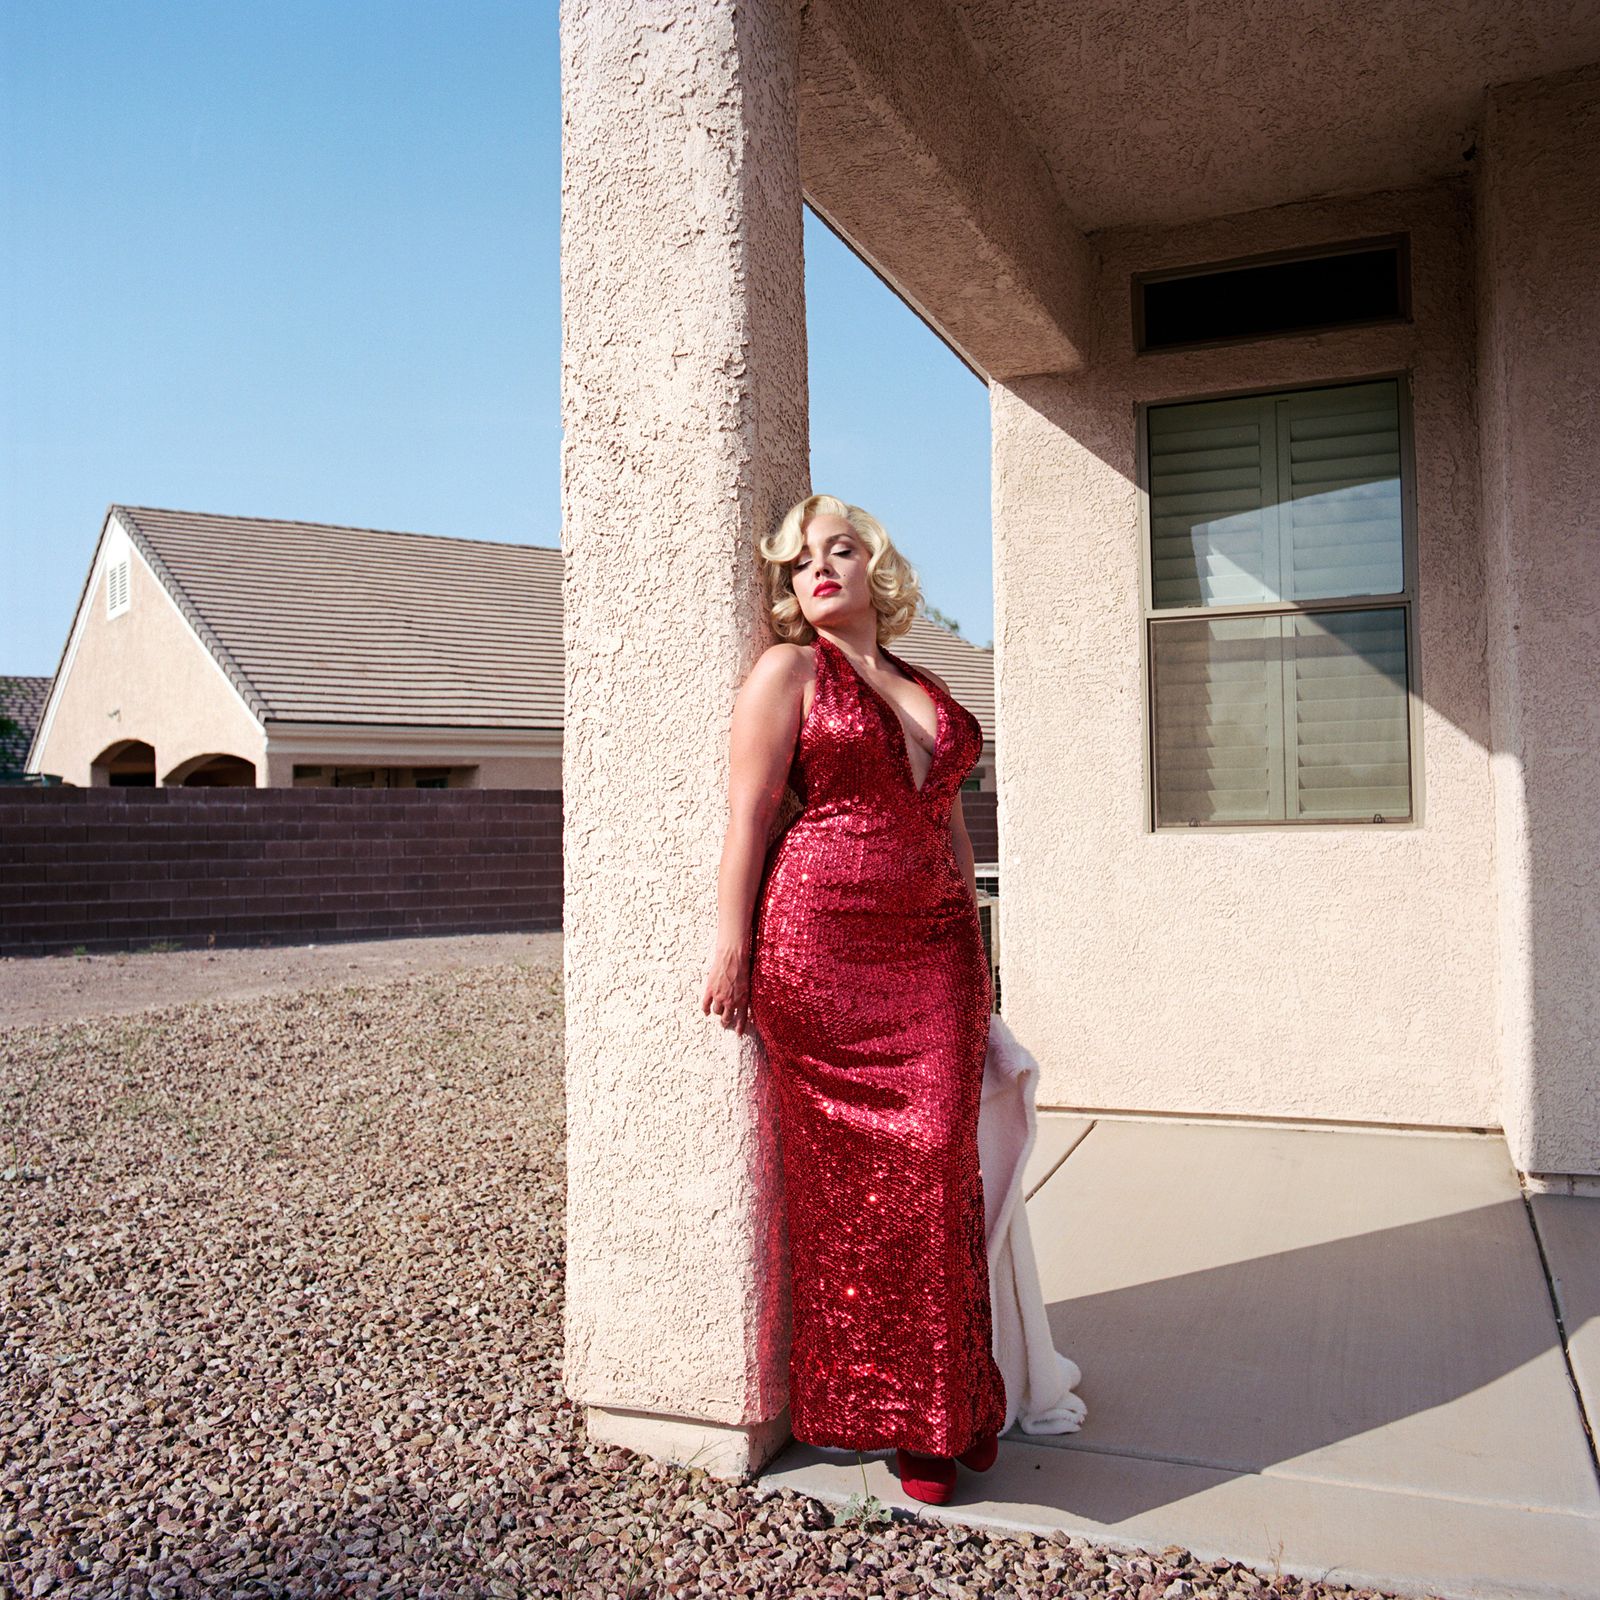 © Emily Berl - Jami as Marilyn Monroe, Henderson, NV, 2013.